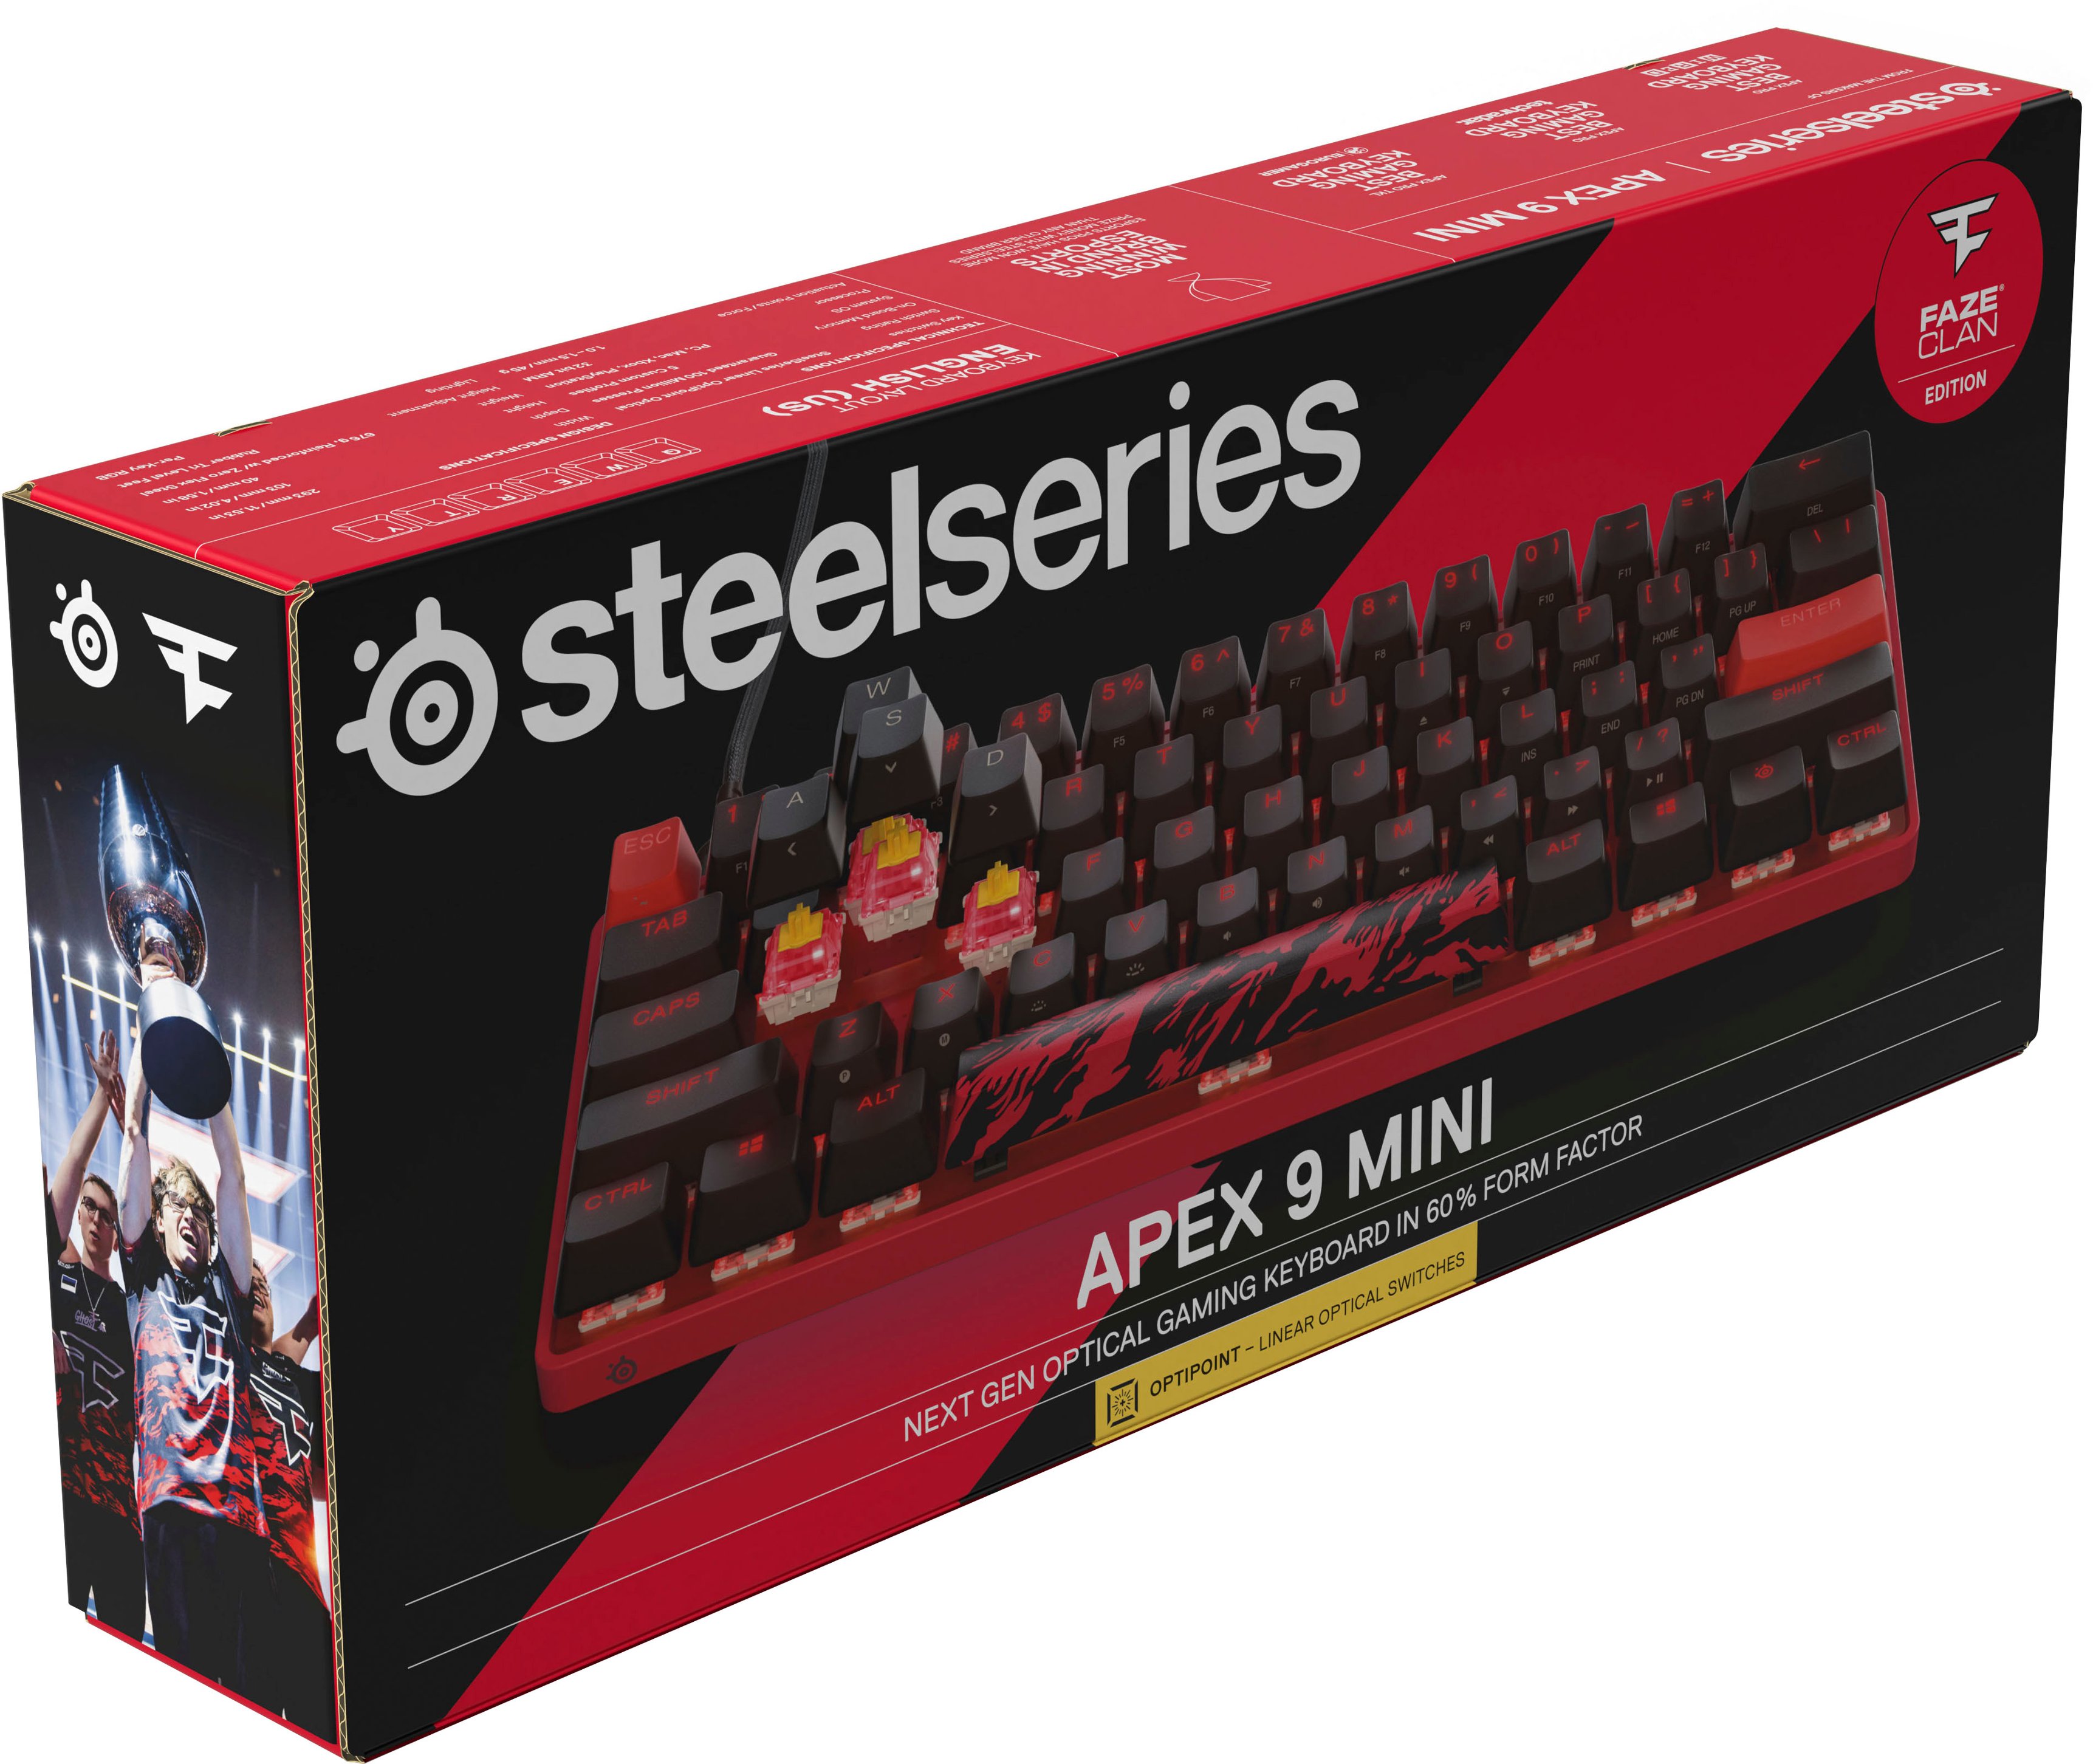 Steelseries Apex 9 Mini gaming keyboard has custom-built OptiPoint